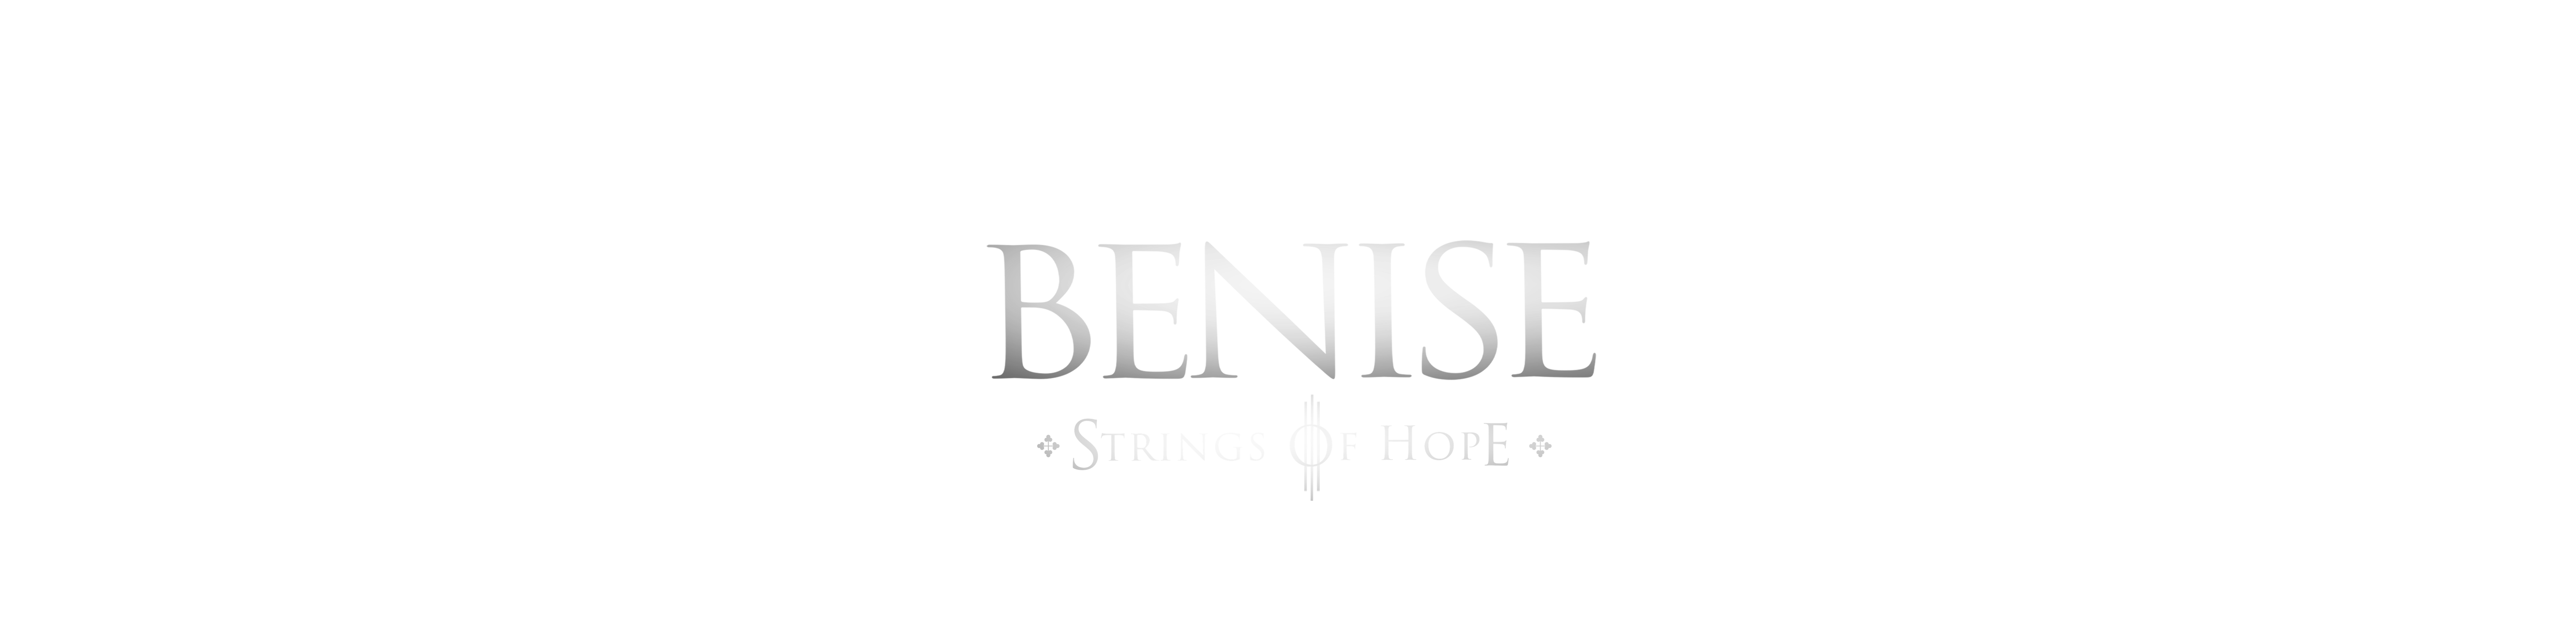 Benise: Strings of Hope